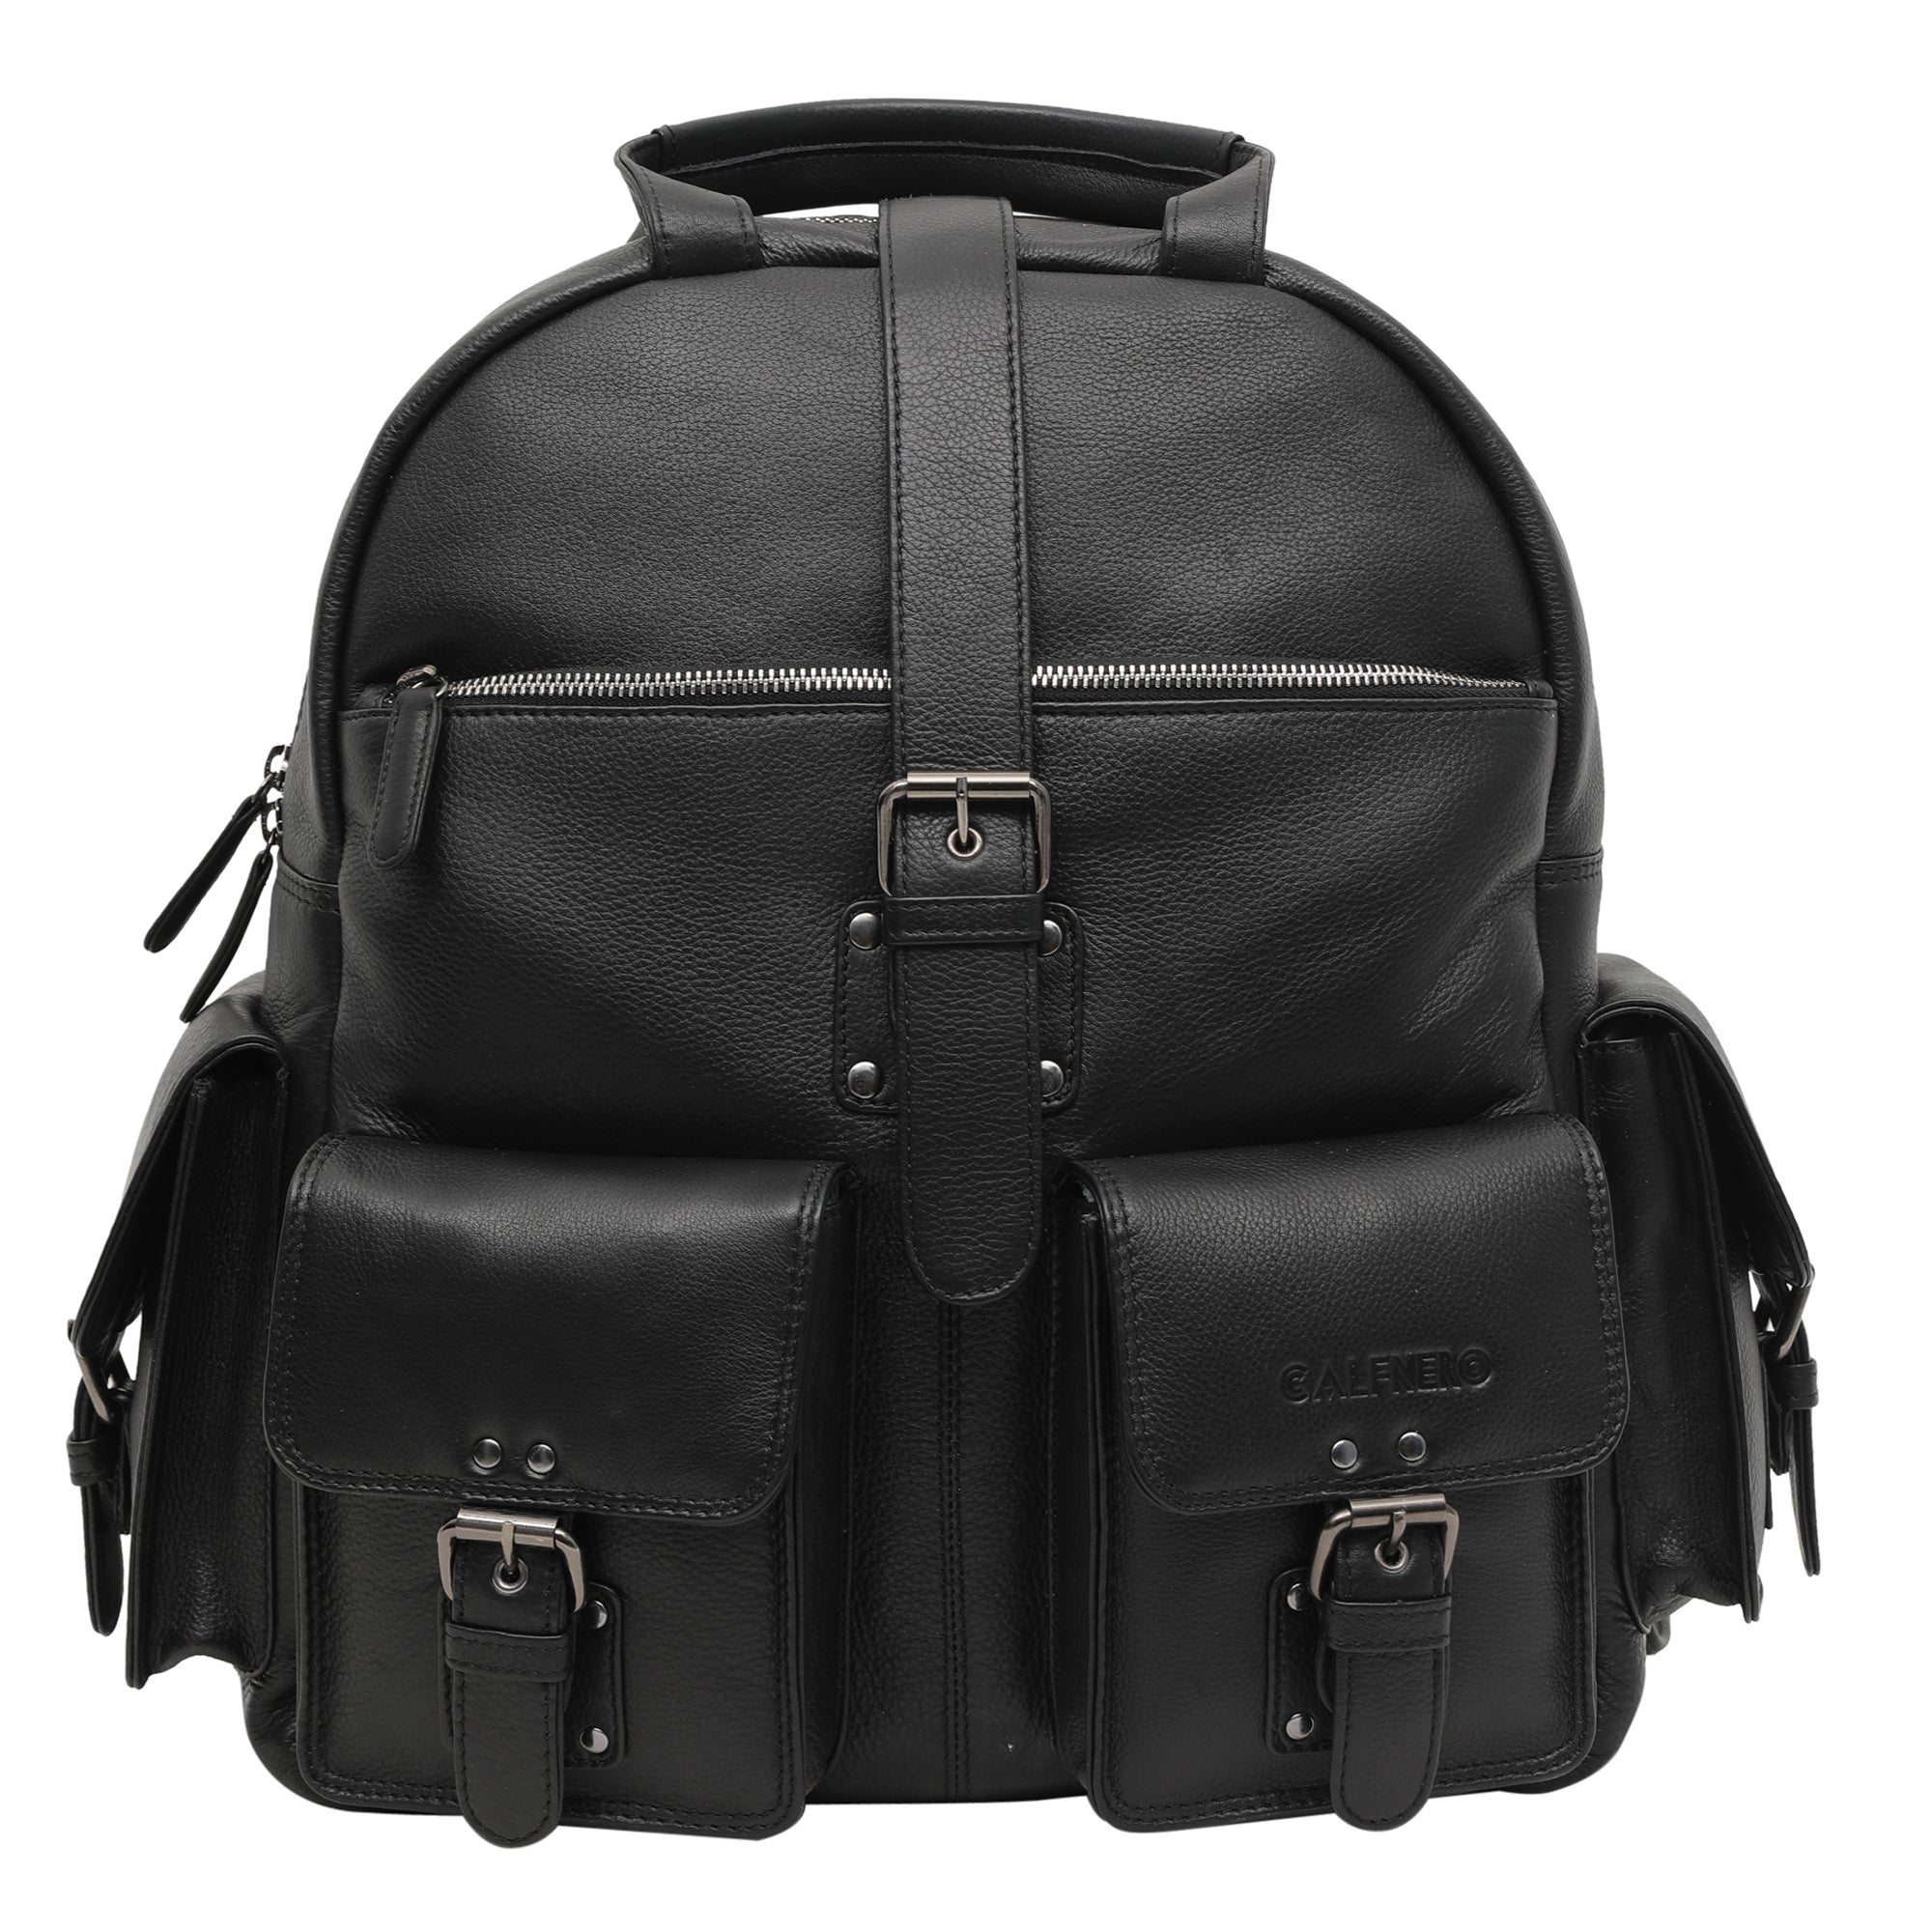 PU Leather stylish handbag/Shoulder Bag For Women & Girls Trendy Branded  backpack